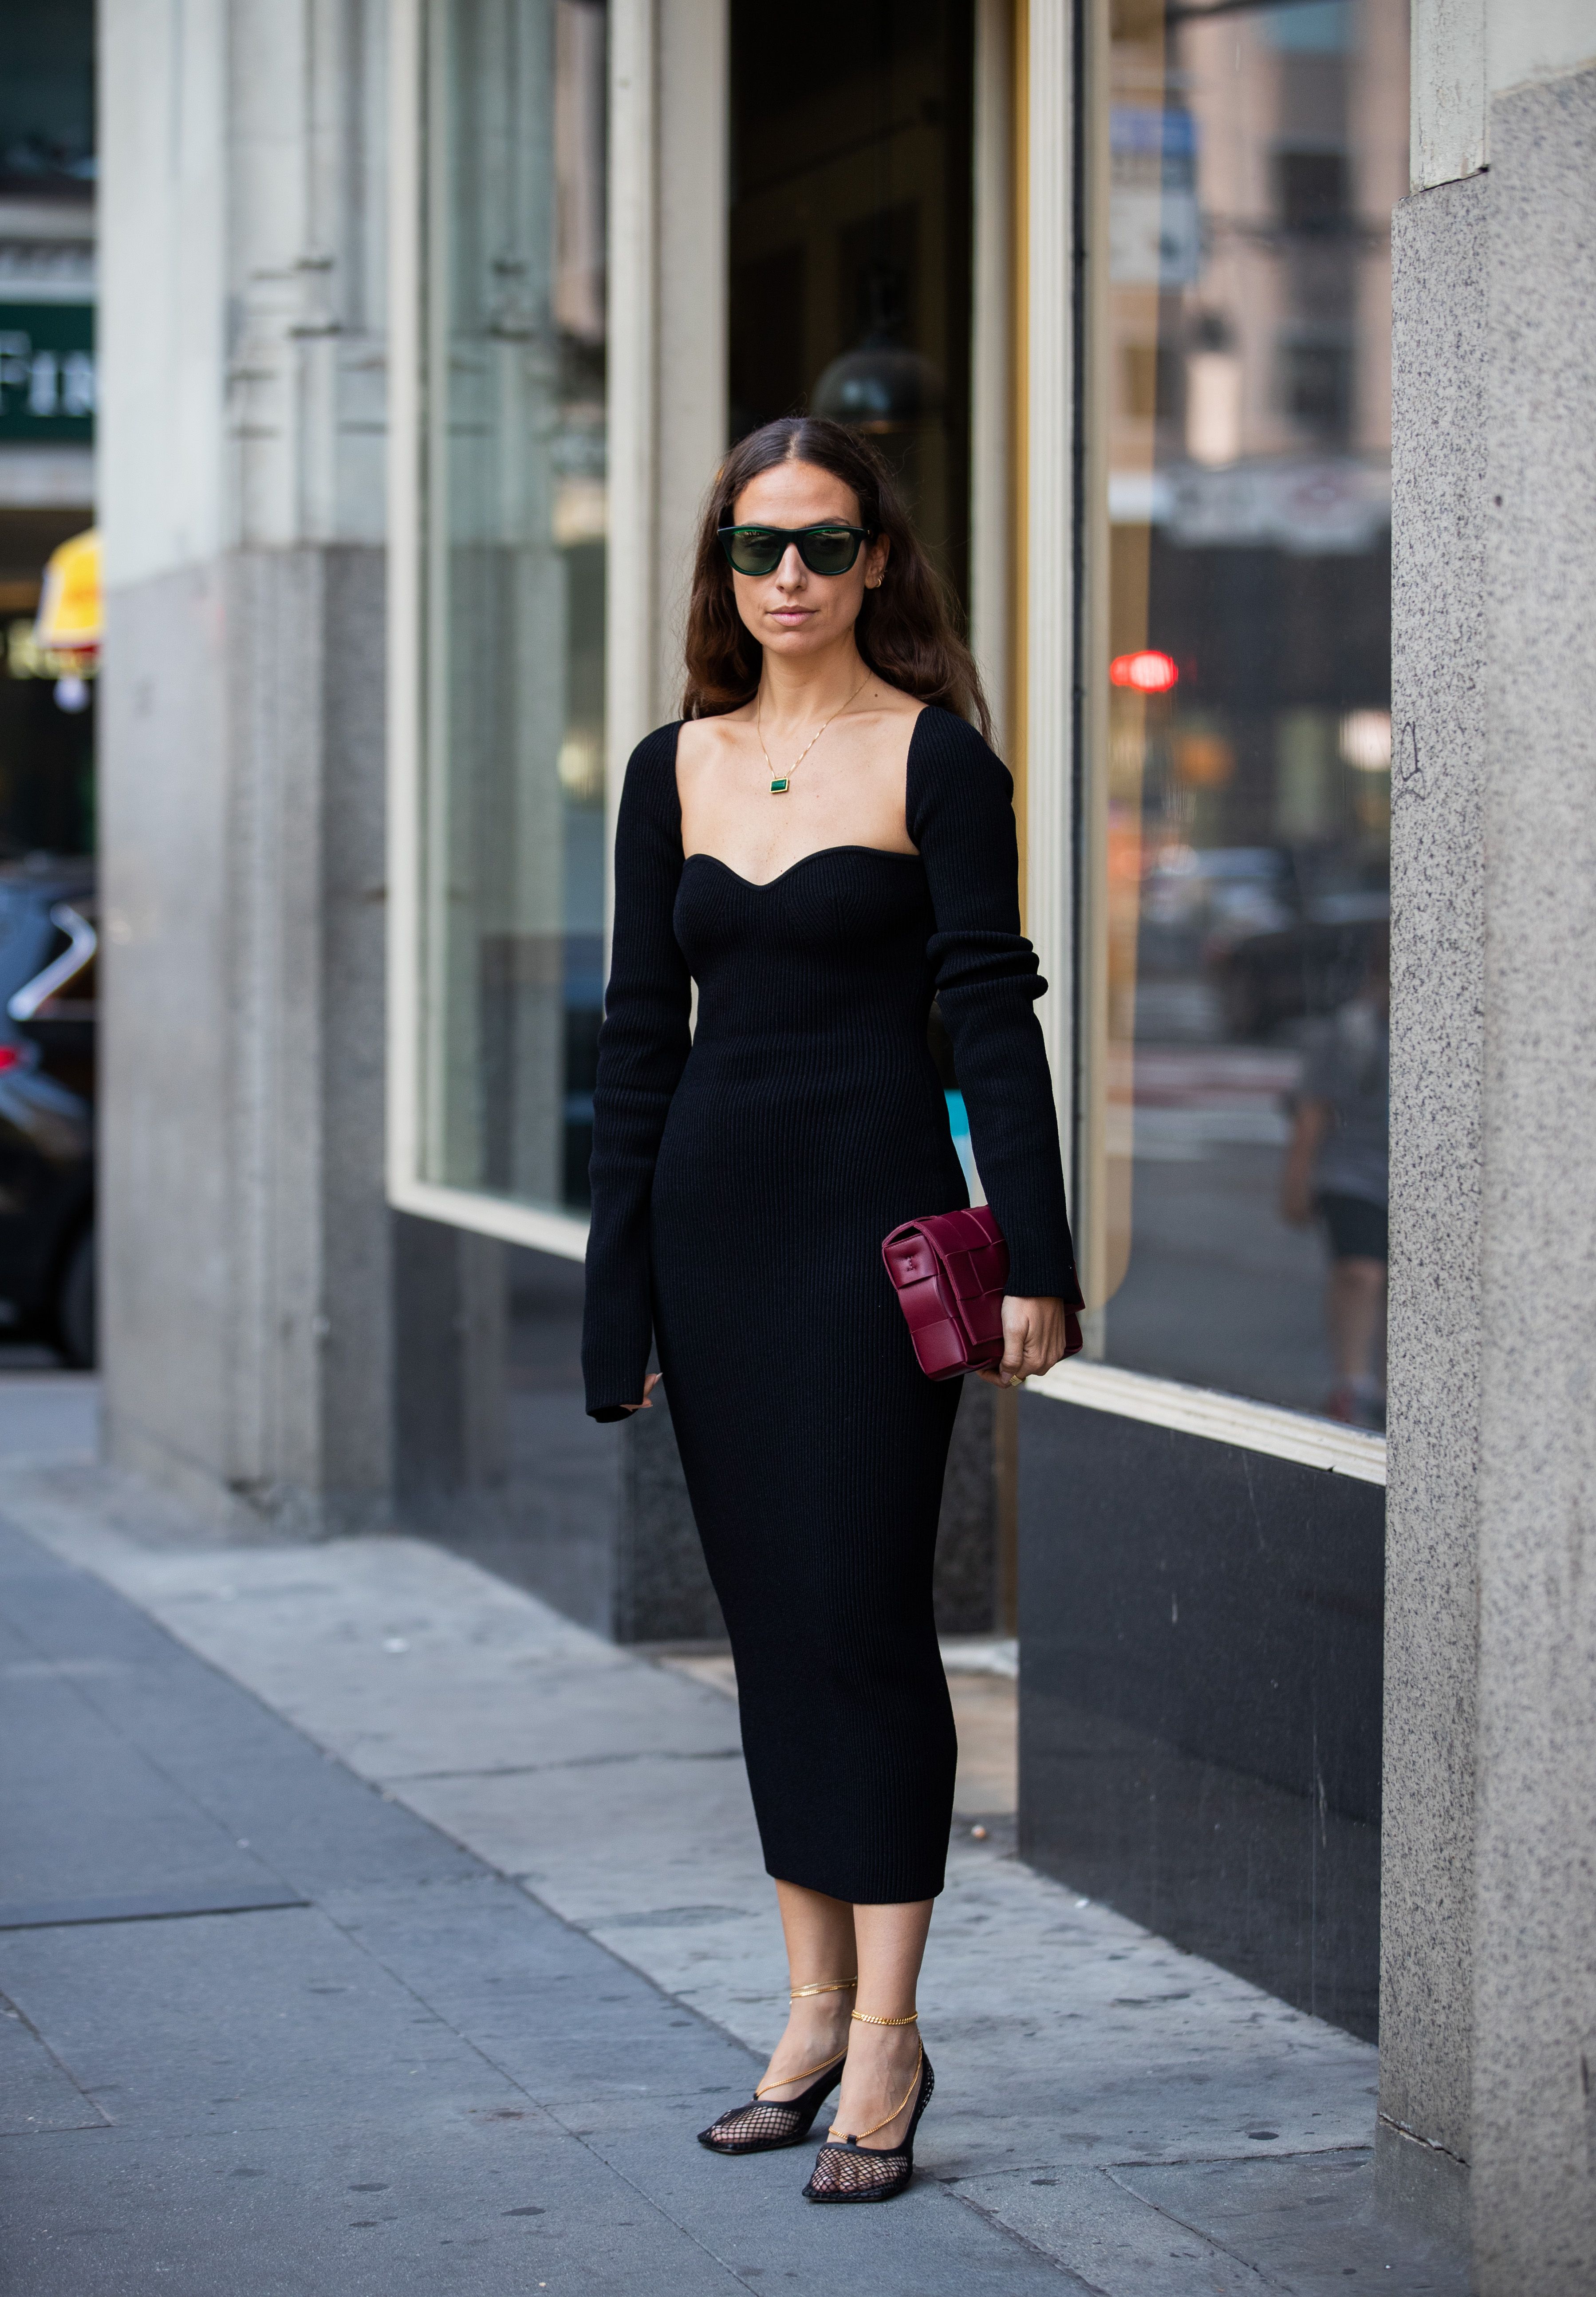 Zara Vestido de tubo negro elegante Moda Vestidos Vestidos de tubo 